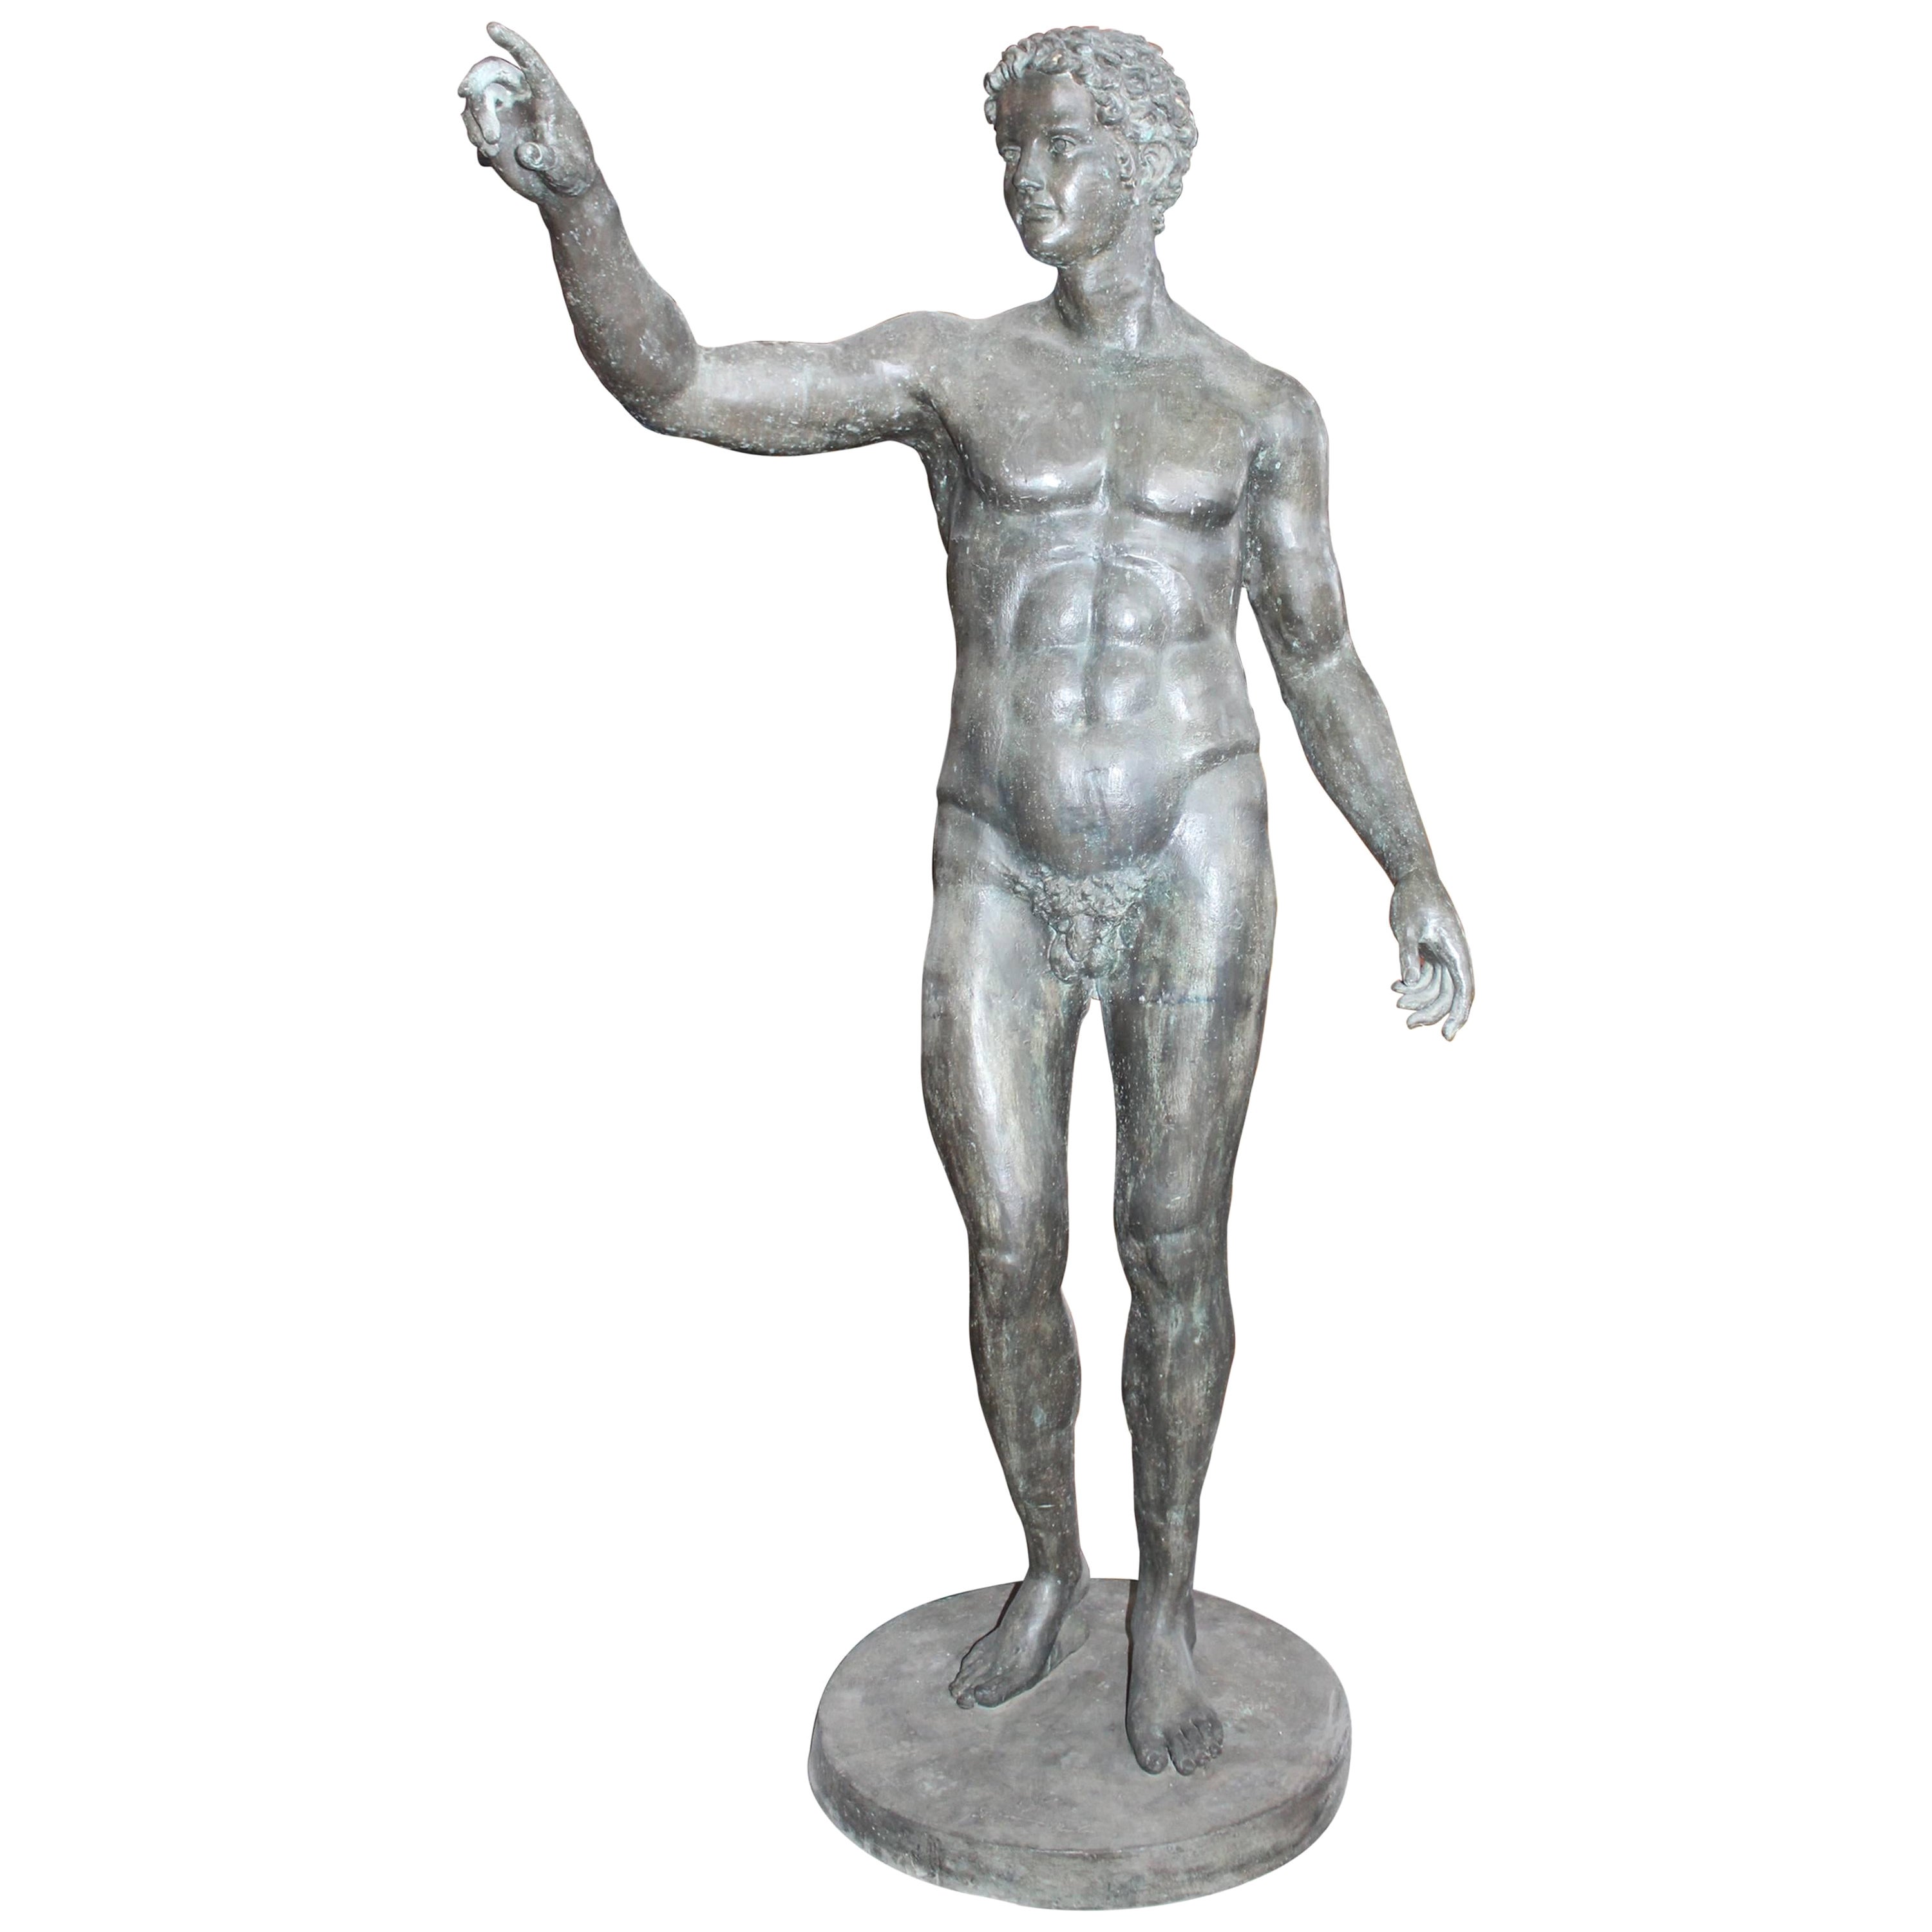 Lebensgroße Bronzeskulptur eines griechischen Athleten aus Bronzeguss